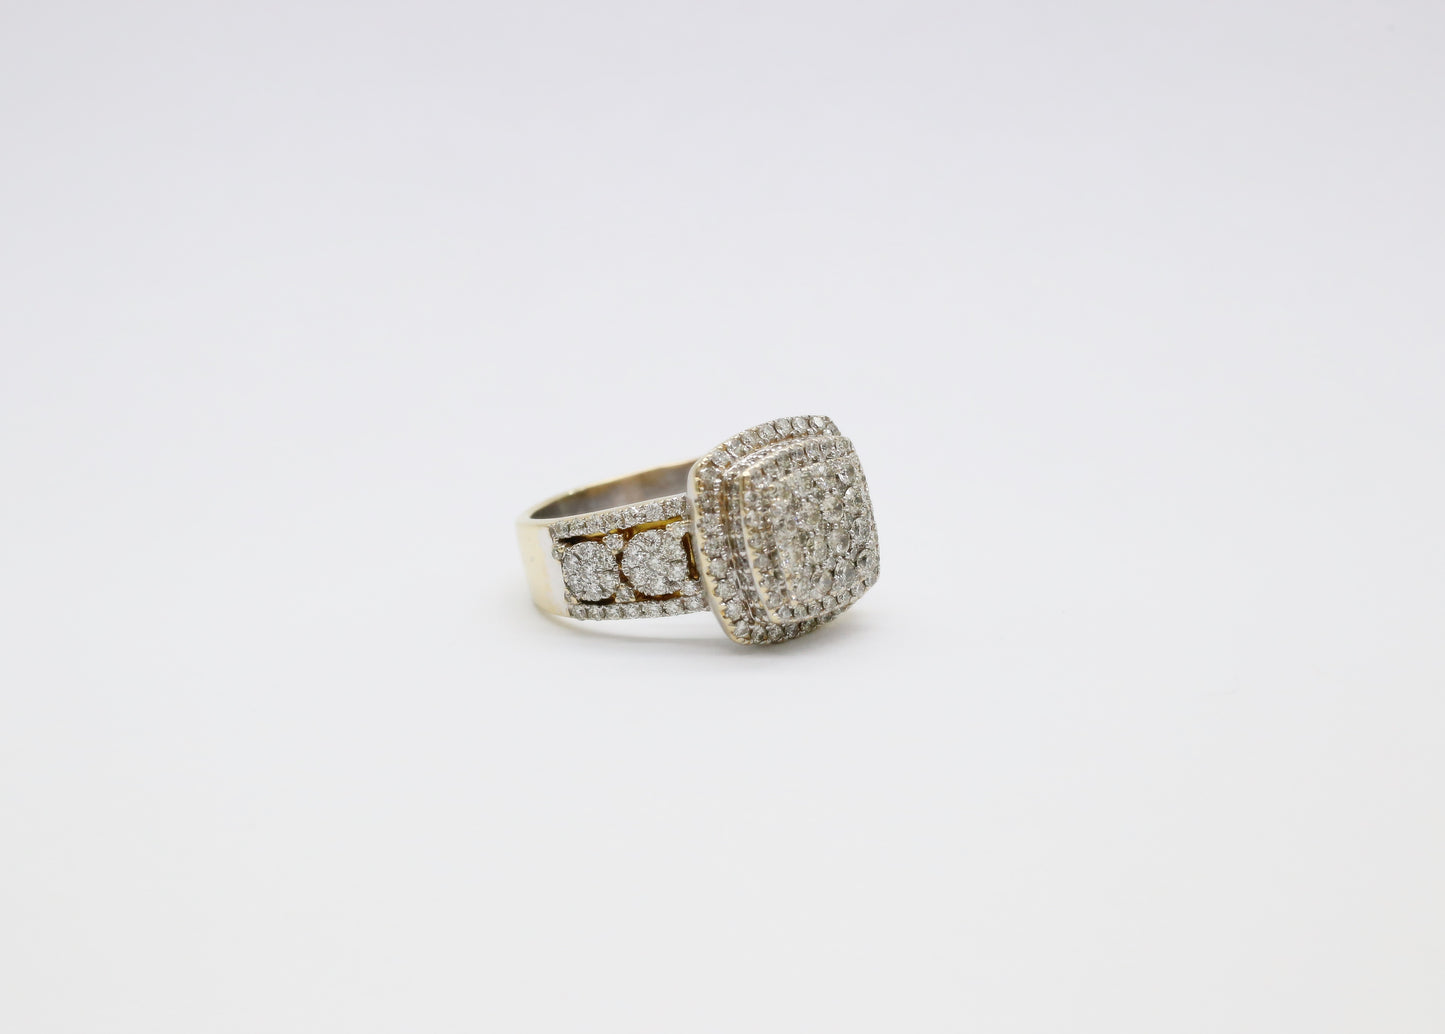 14k Gold Men's Diamond Ring, Size 11.5 - 13.3g